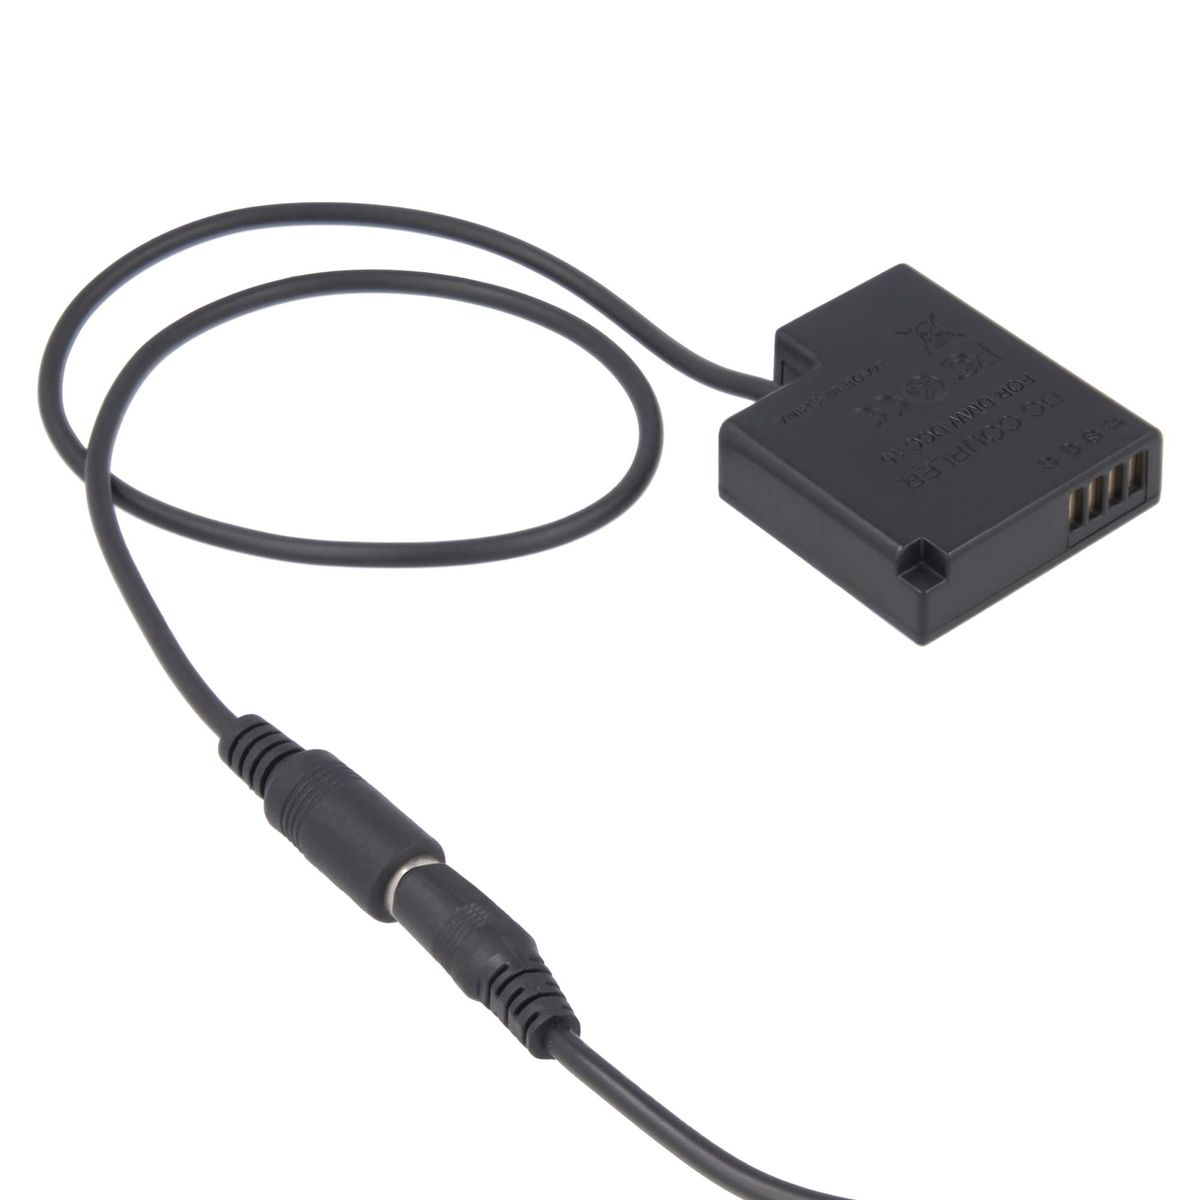 AKKU-KING USB Adapter DCC15 Ladegerät kompatibel Panasonic mit Angabe Kuppler keine + Panasonic